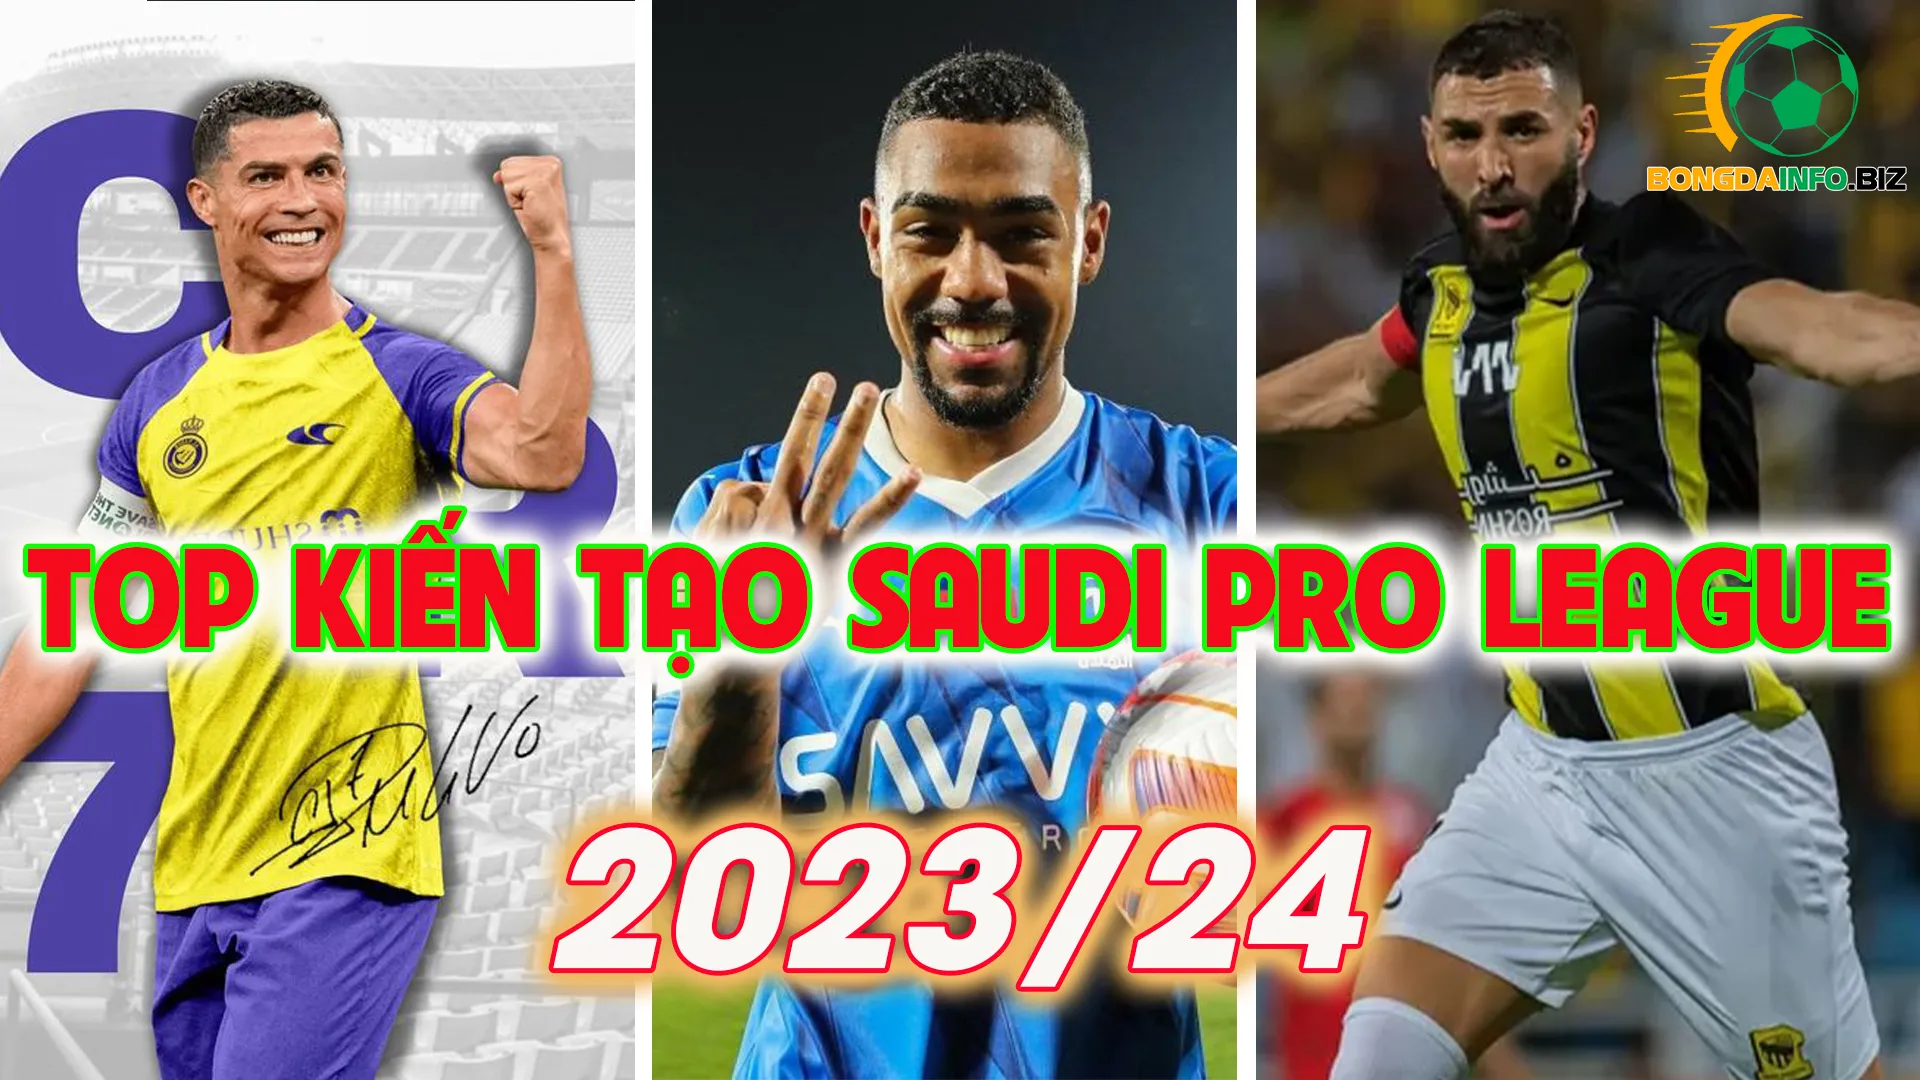 Top kiến tạo Saudi Pro League 2023/24 mới nhất và chính xác nhất